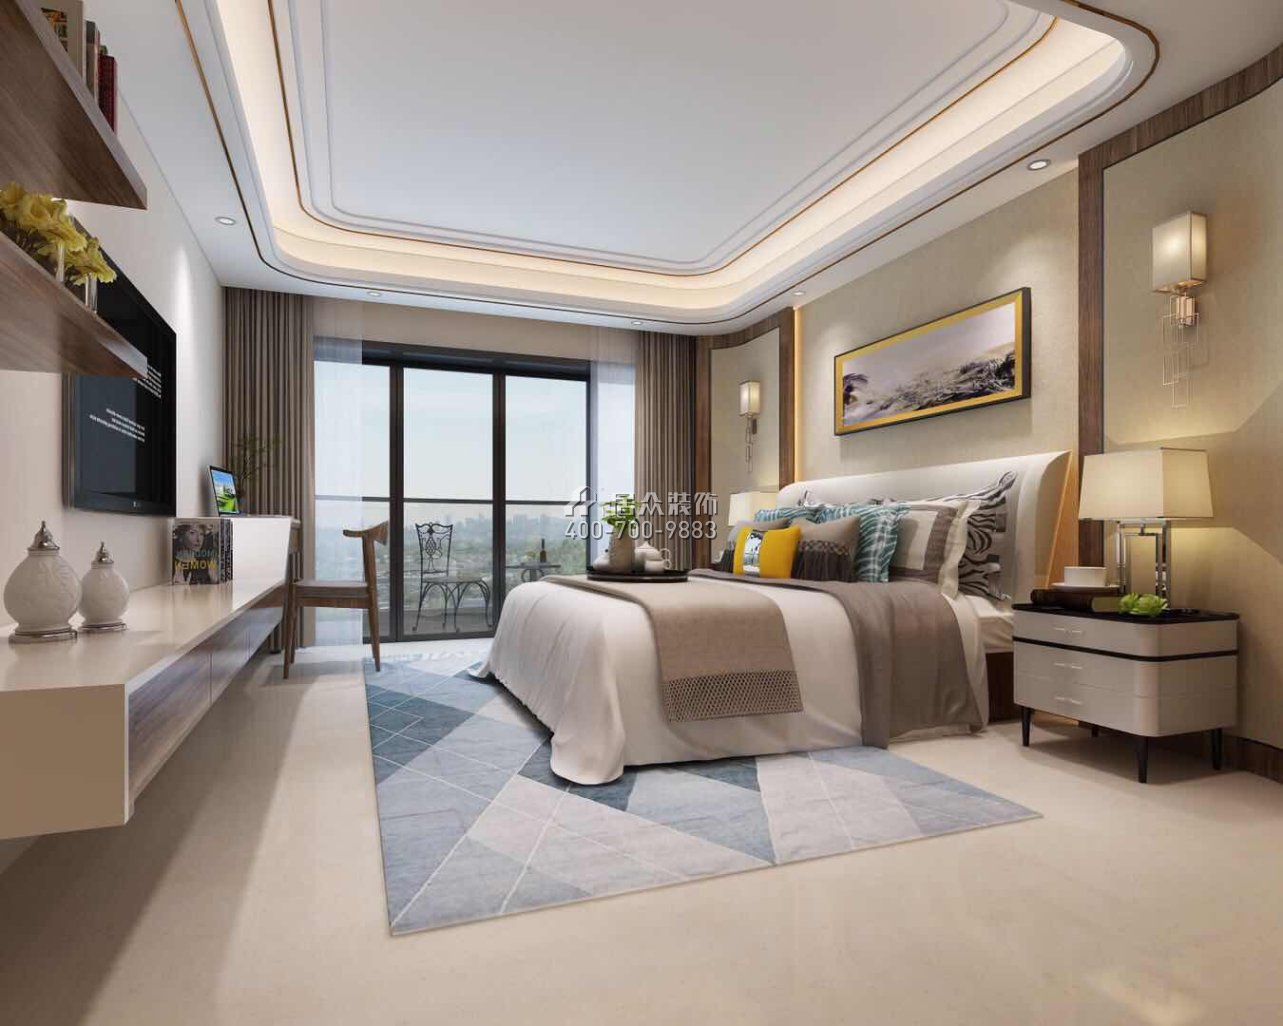 天鹅湖花园一期240平方米现代简约风格平层户型卧室装修效果图